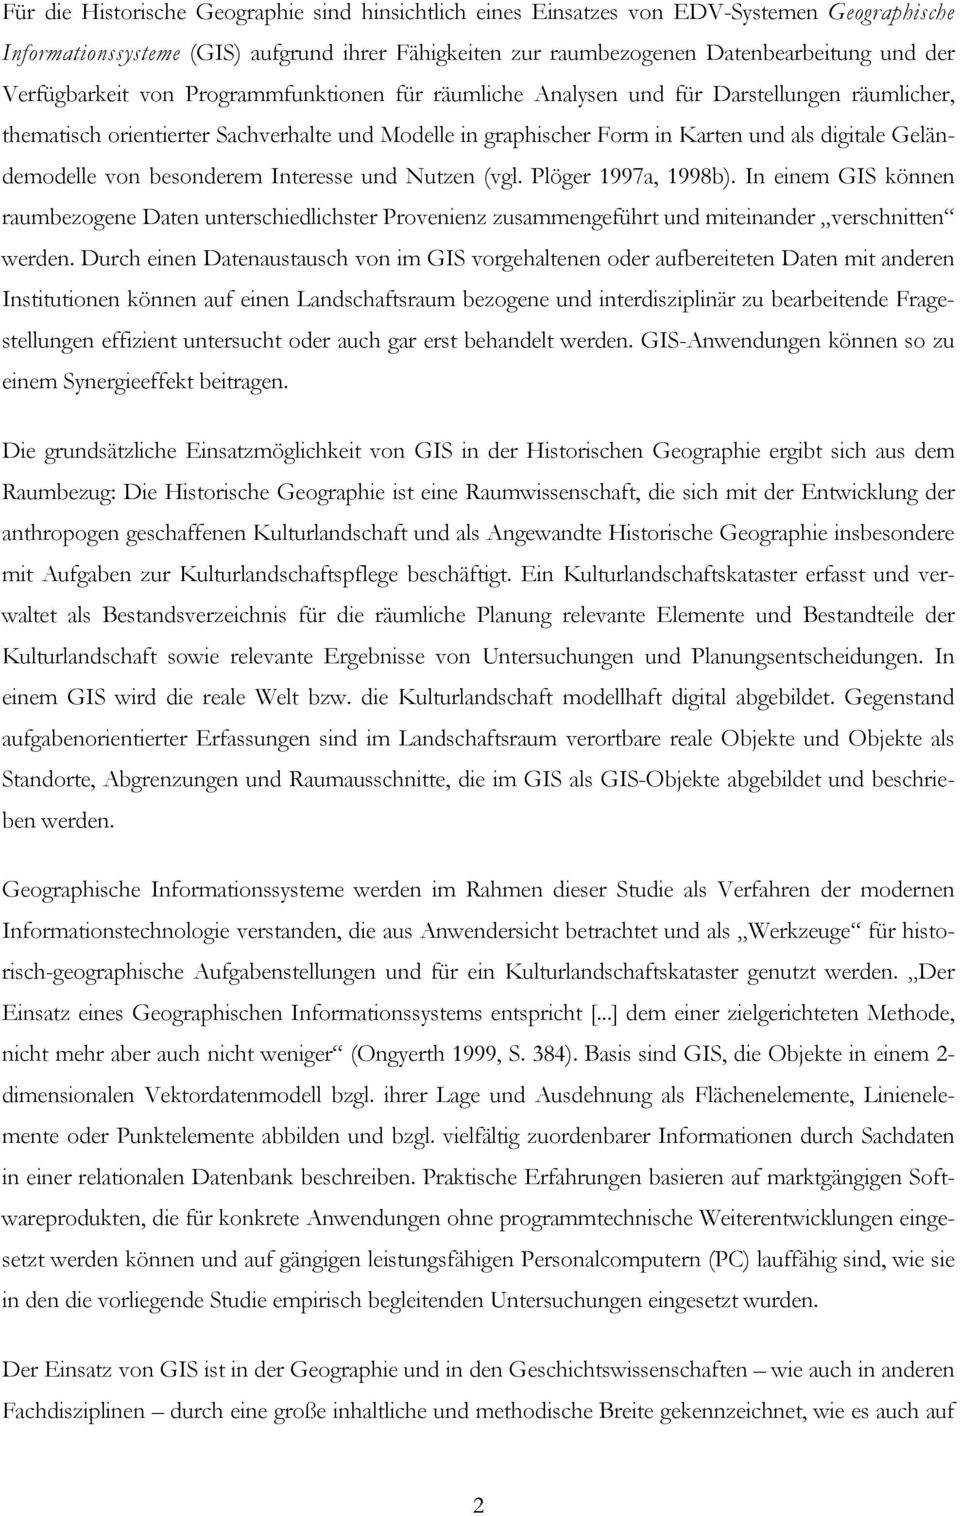 Geländemodelle von besonderem Interesse und Nutzen (vgl. Plöger 1997a, 1998b).